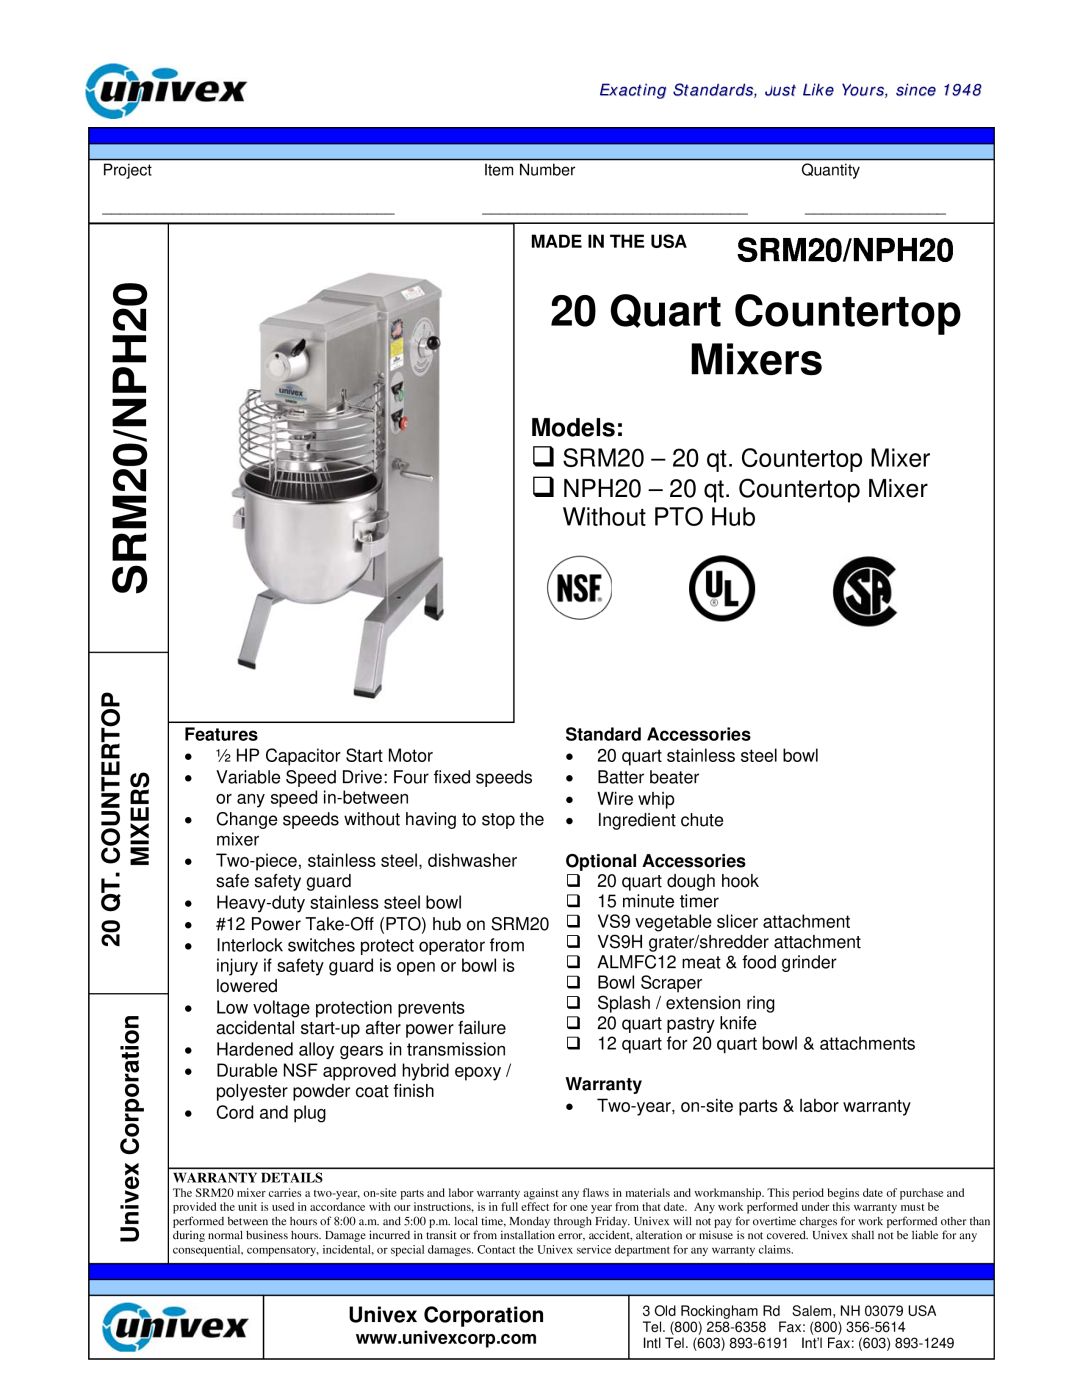 Univex manual Models, Countertop, Mixers, 20 QT, Univex Corporation, MADE IN THE USA SRM20/NPH20, Features 